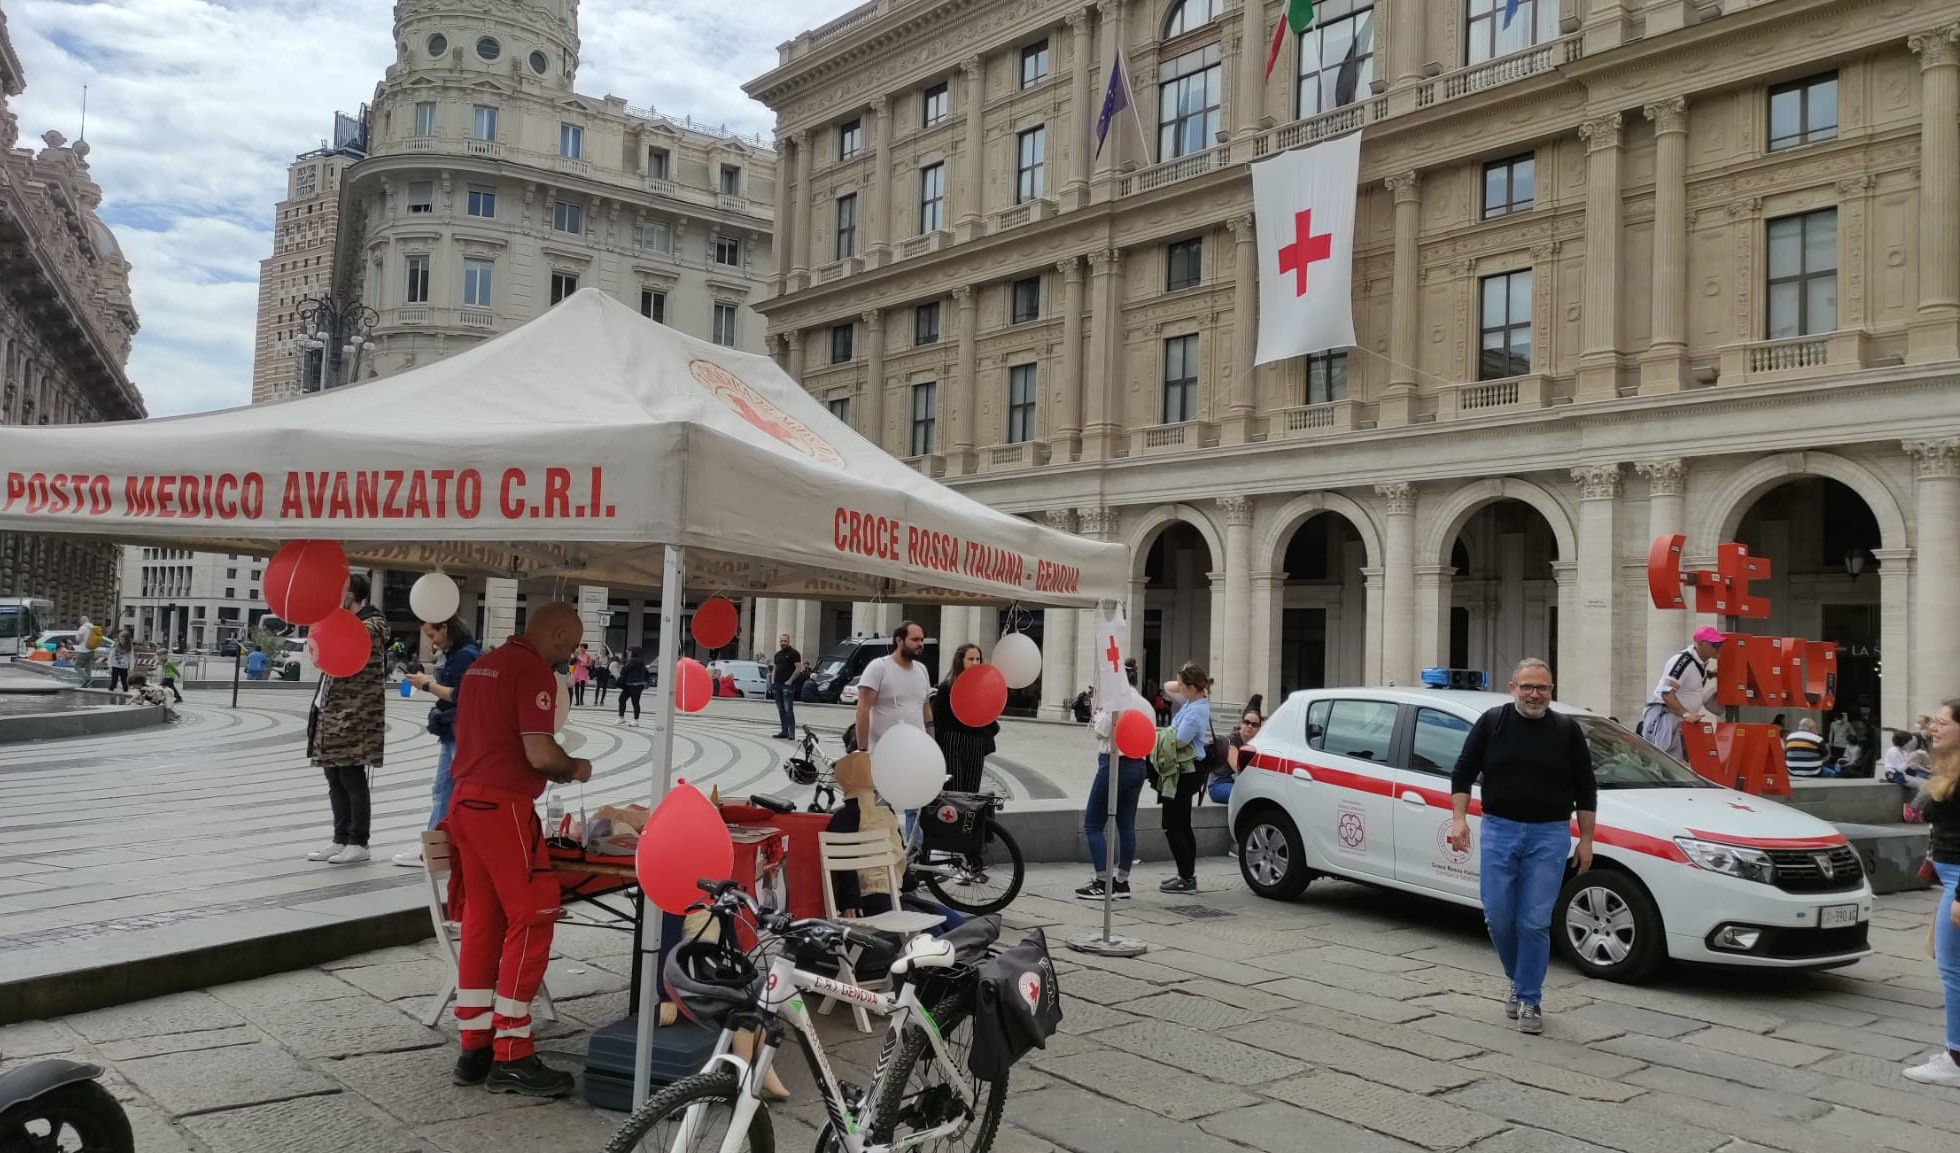 Giornata Croce Rossa a Genova, premiati 15 volontari intervenuti nel crollo del Morandi